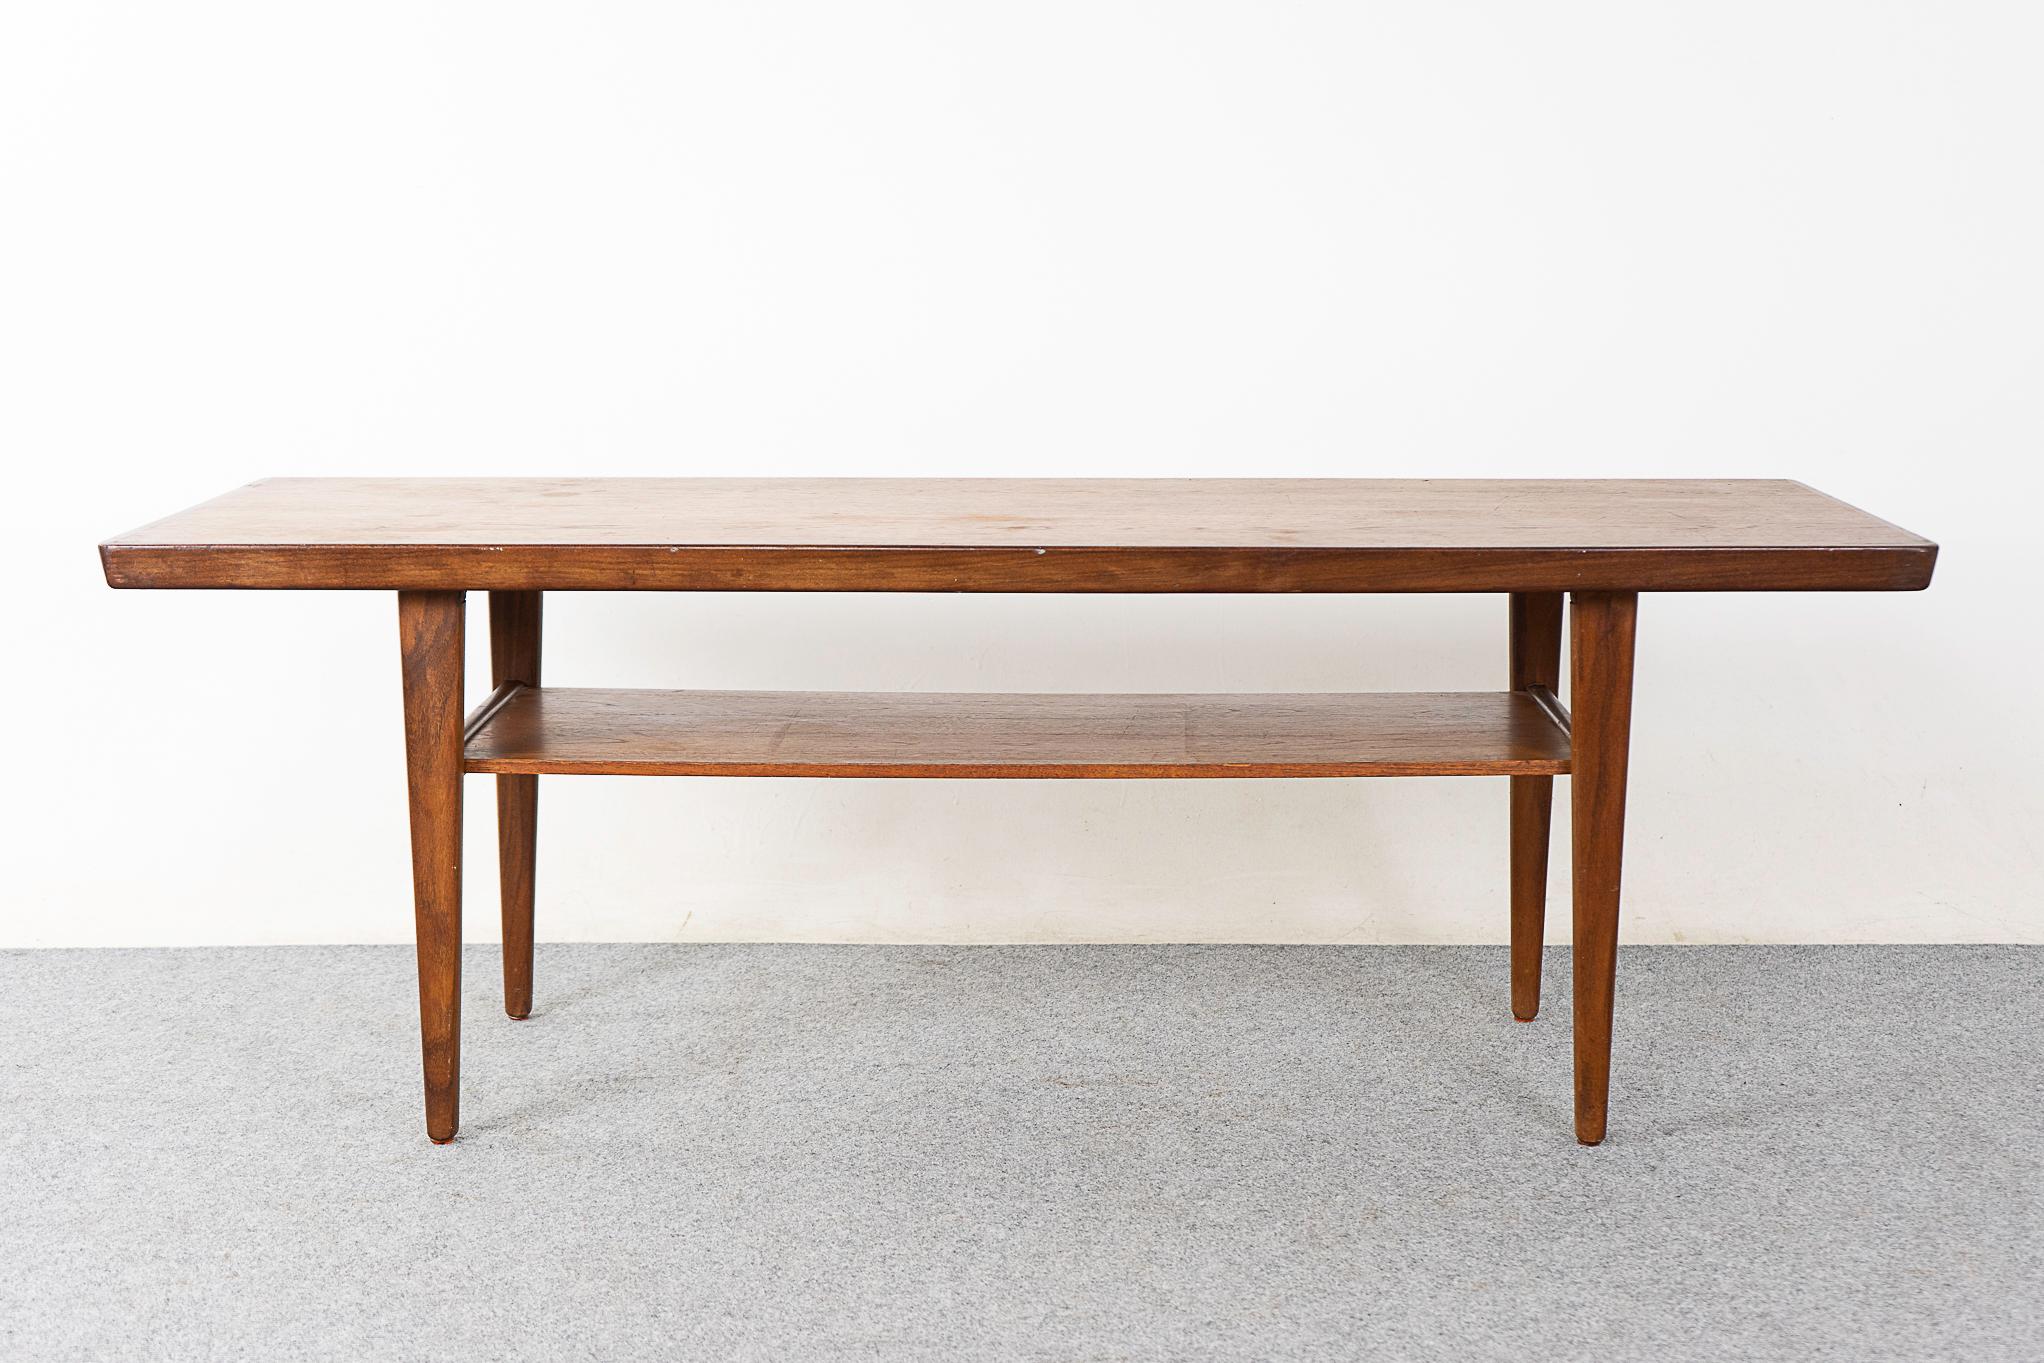 Couchtisch aus Teakholz aus der Mitte des Jahrhunderts, circa 1960er Jahre. Die Tischplatte hat ein schönes Buchfurnier, eine abgewinkelte Massivholzkante und elegante Beine. Praktische untere Ablage, verstecken Sie Unordnung!

Bitte erkundigen Sie